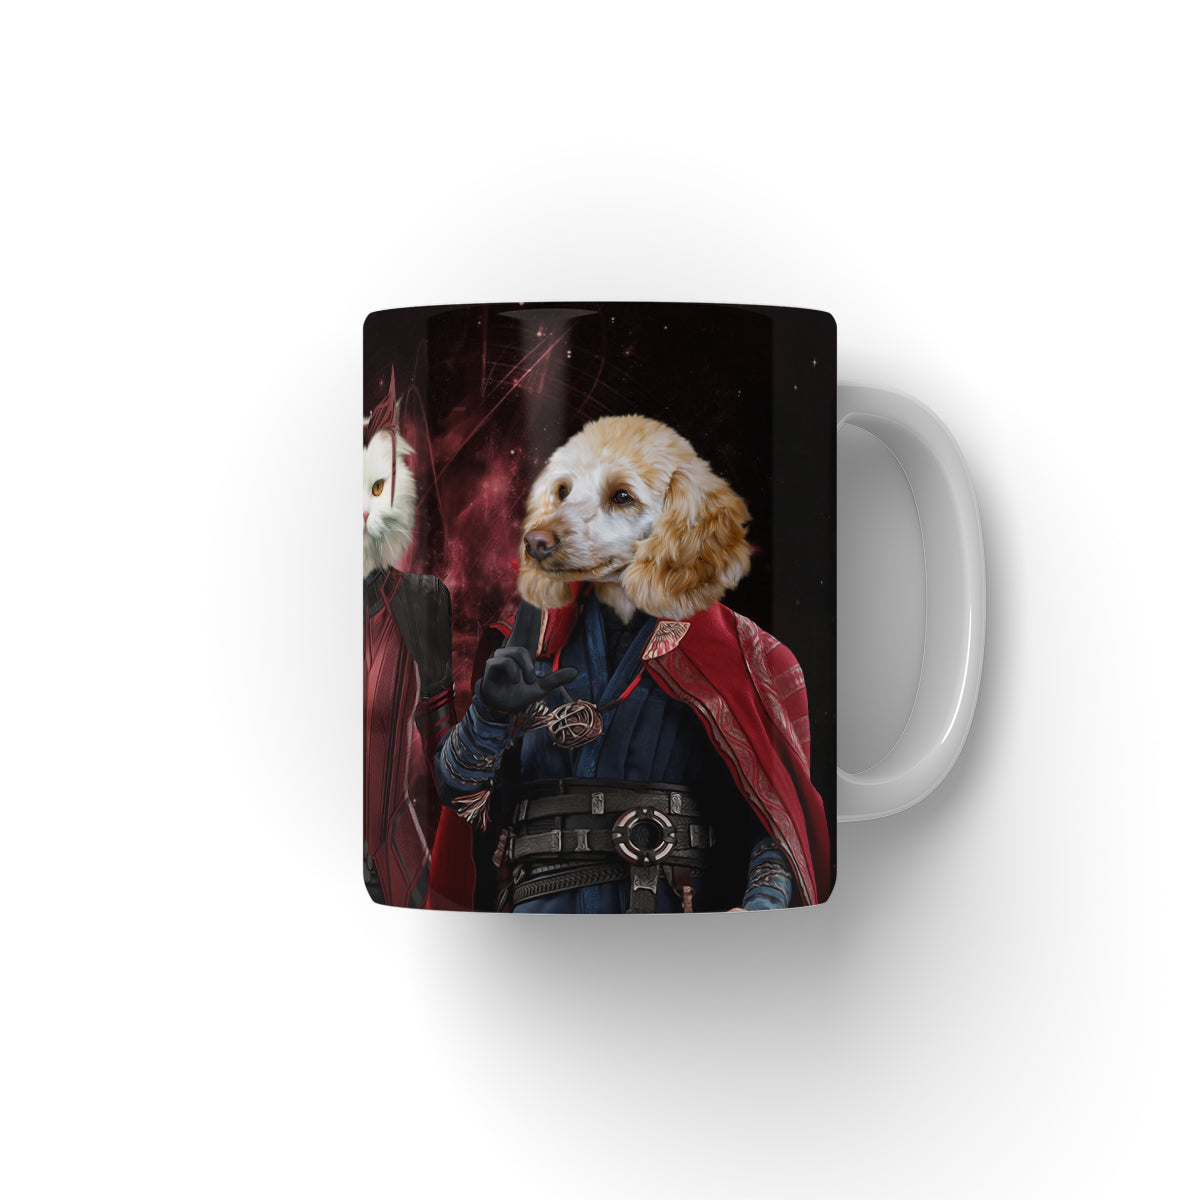 Thor & Wanda, Paw & Glory, paw and glory, dog on mug, personalised dog mug, custom dog face mug, coffee mug with dog picture, pet mug portraits, dog mugs custom, Pet Portrait Mug